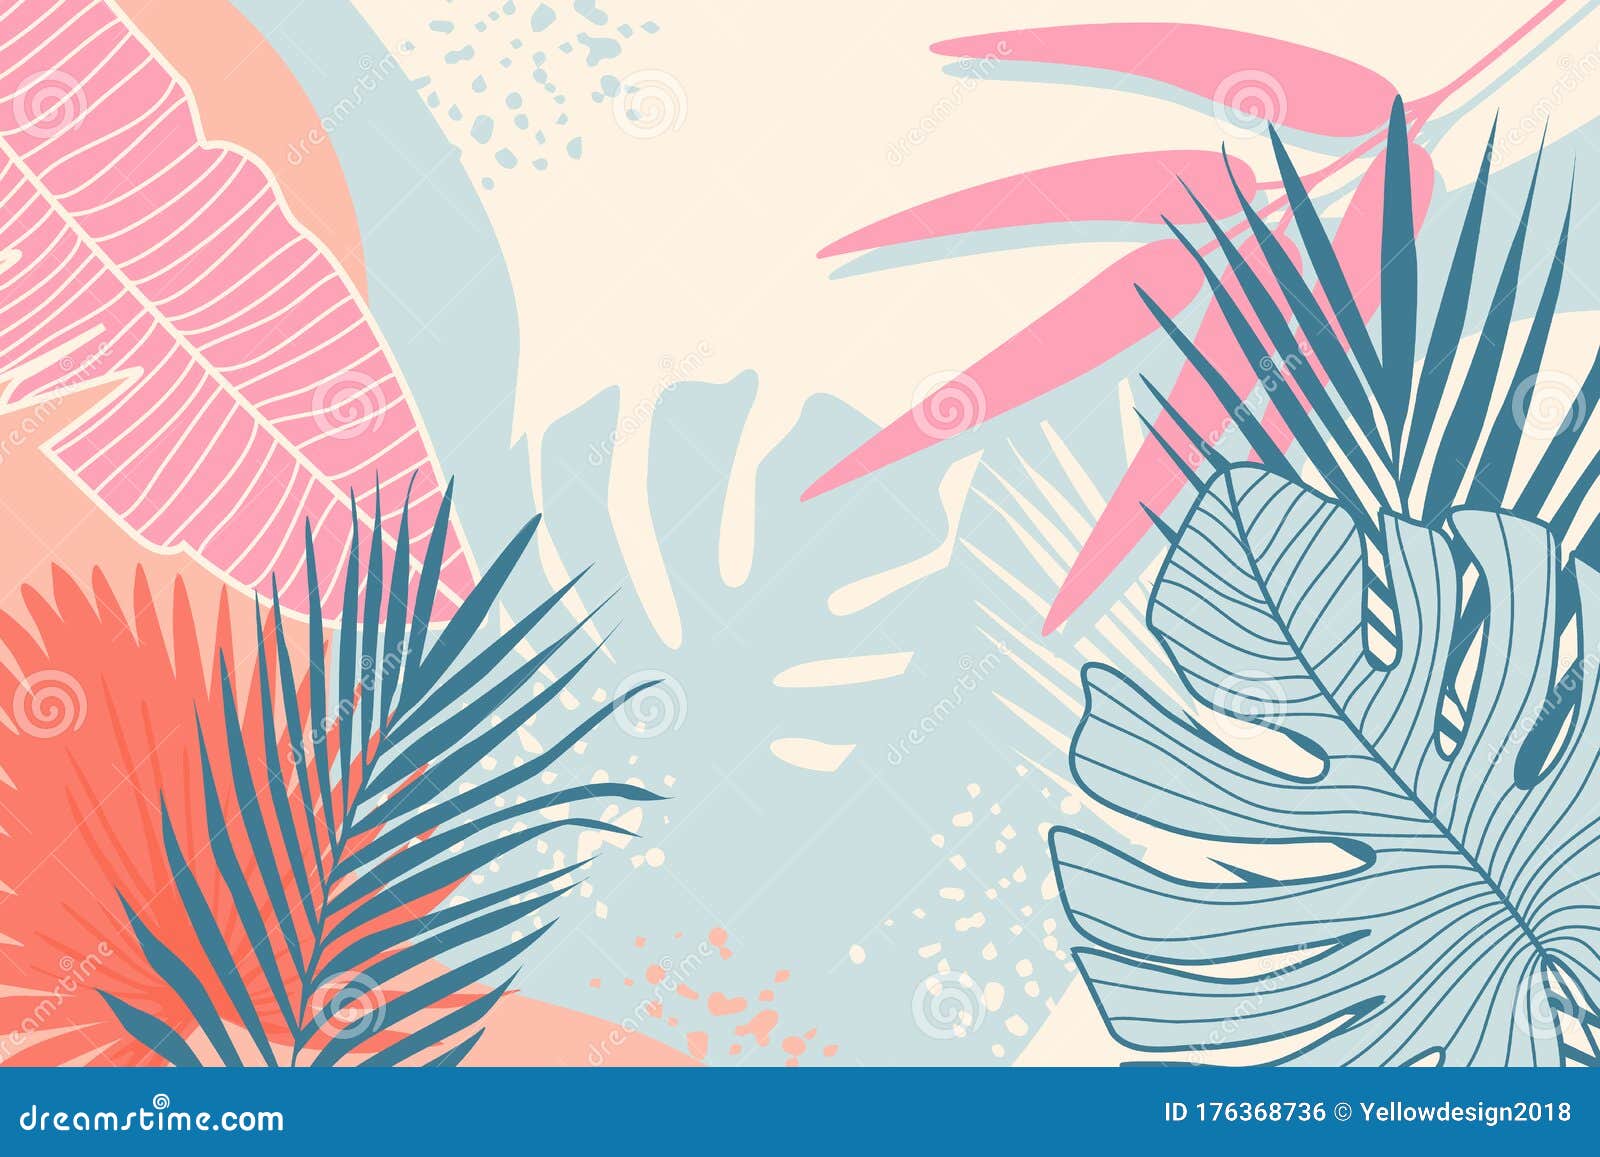 现代热带背景丛林植物自然背景夏棕叶壁纸库存例证 插画包括有现代热带背景 夏棕叶壁纸 丛林植物自然背景